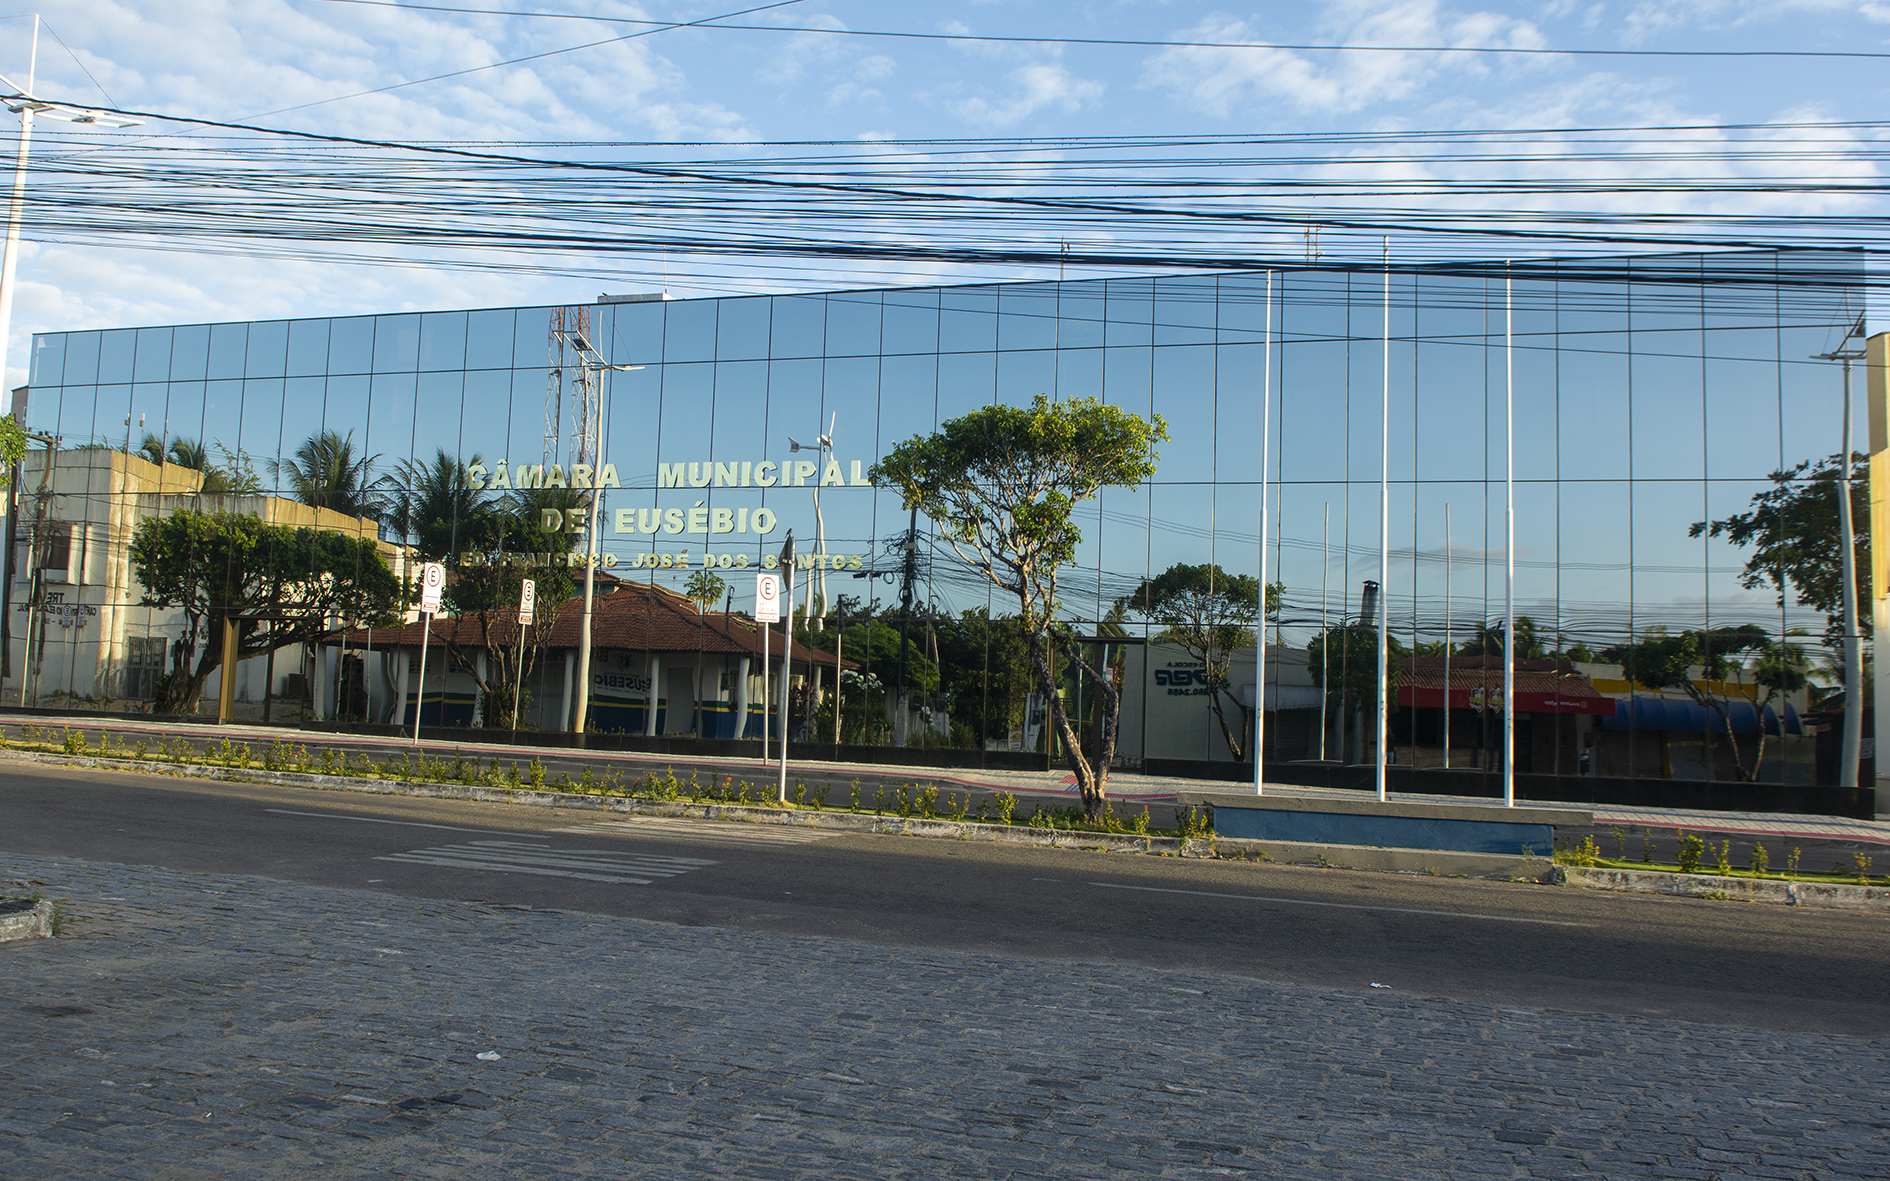 Câmara Municipal de Eusébio reinaugura sede após reforma